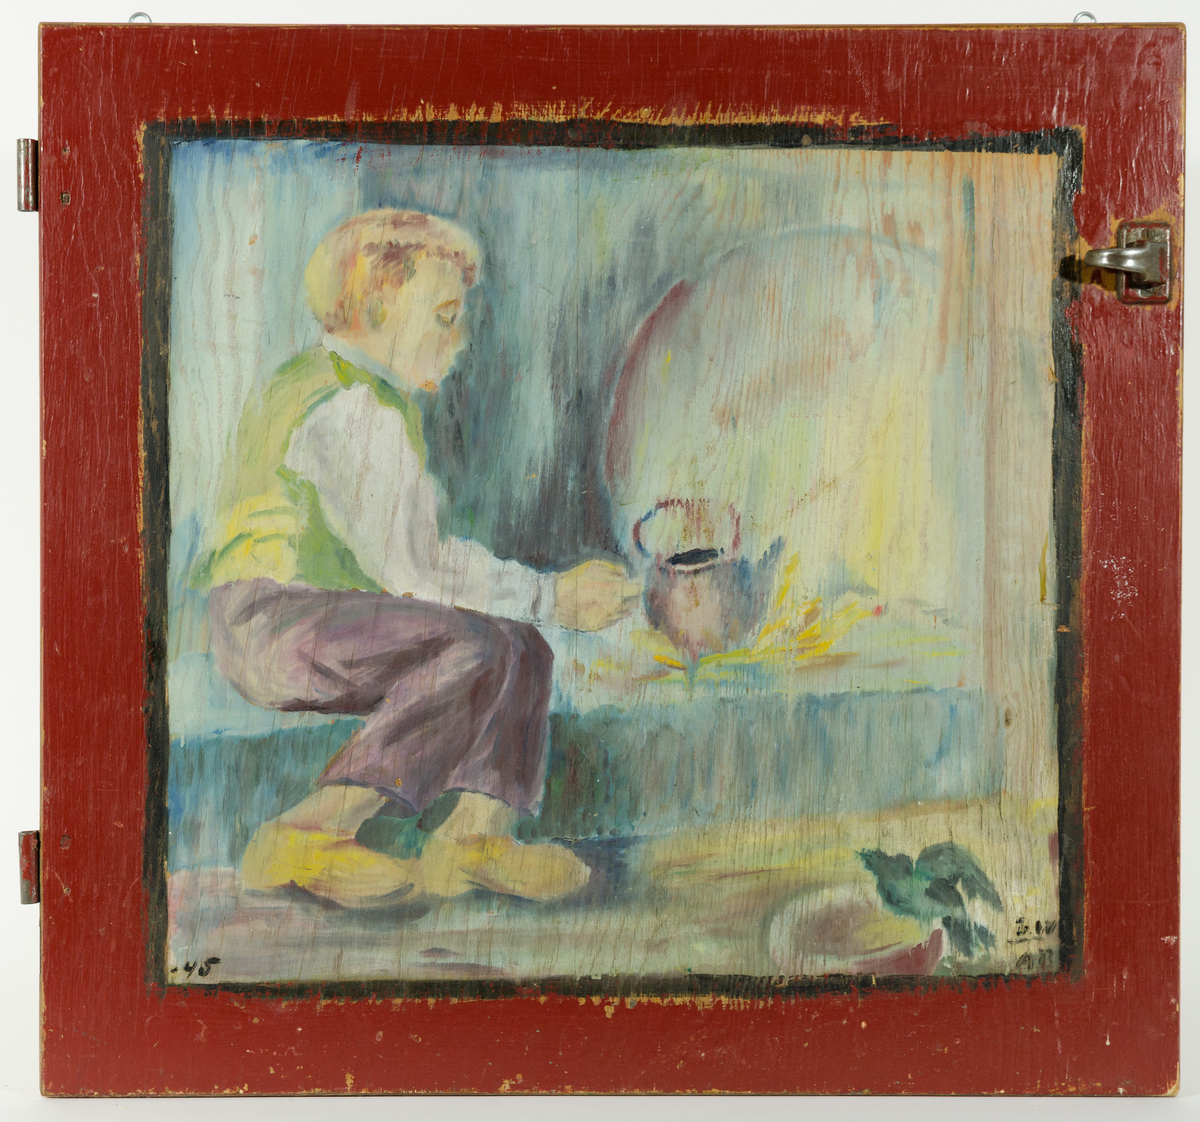 påført: -45 (1945)
Maleri på skapdør.